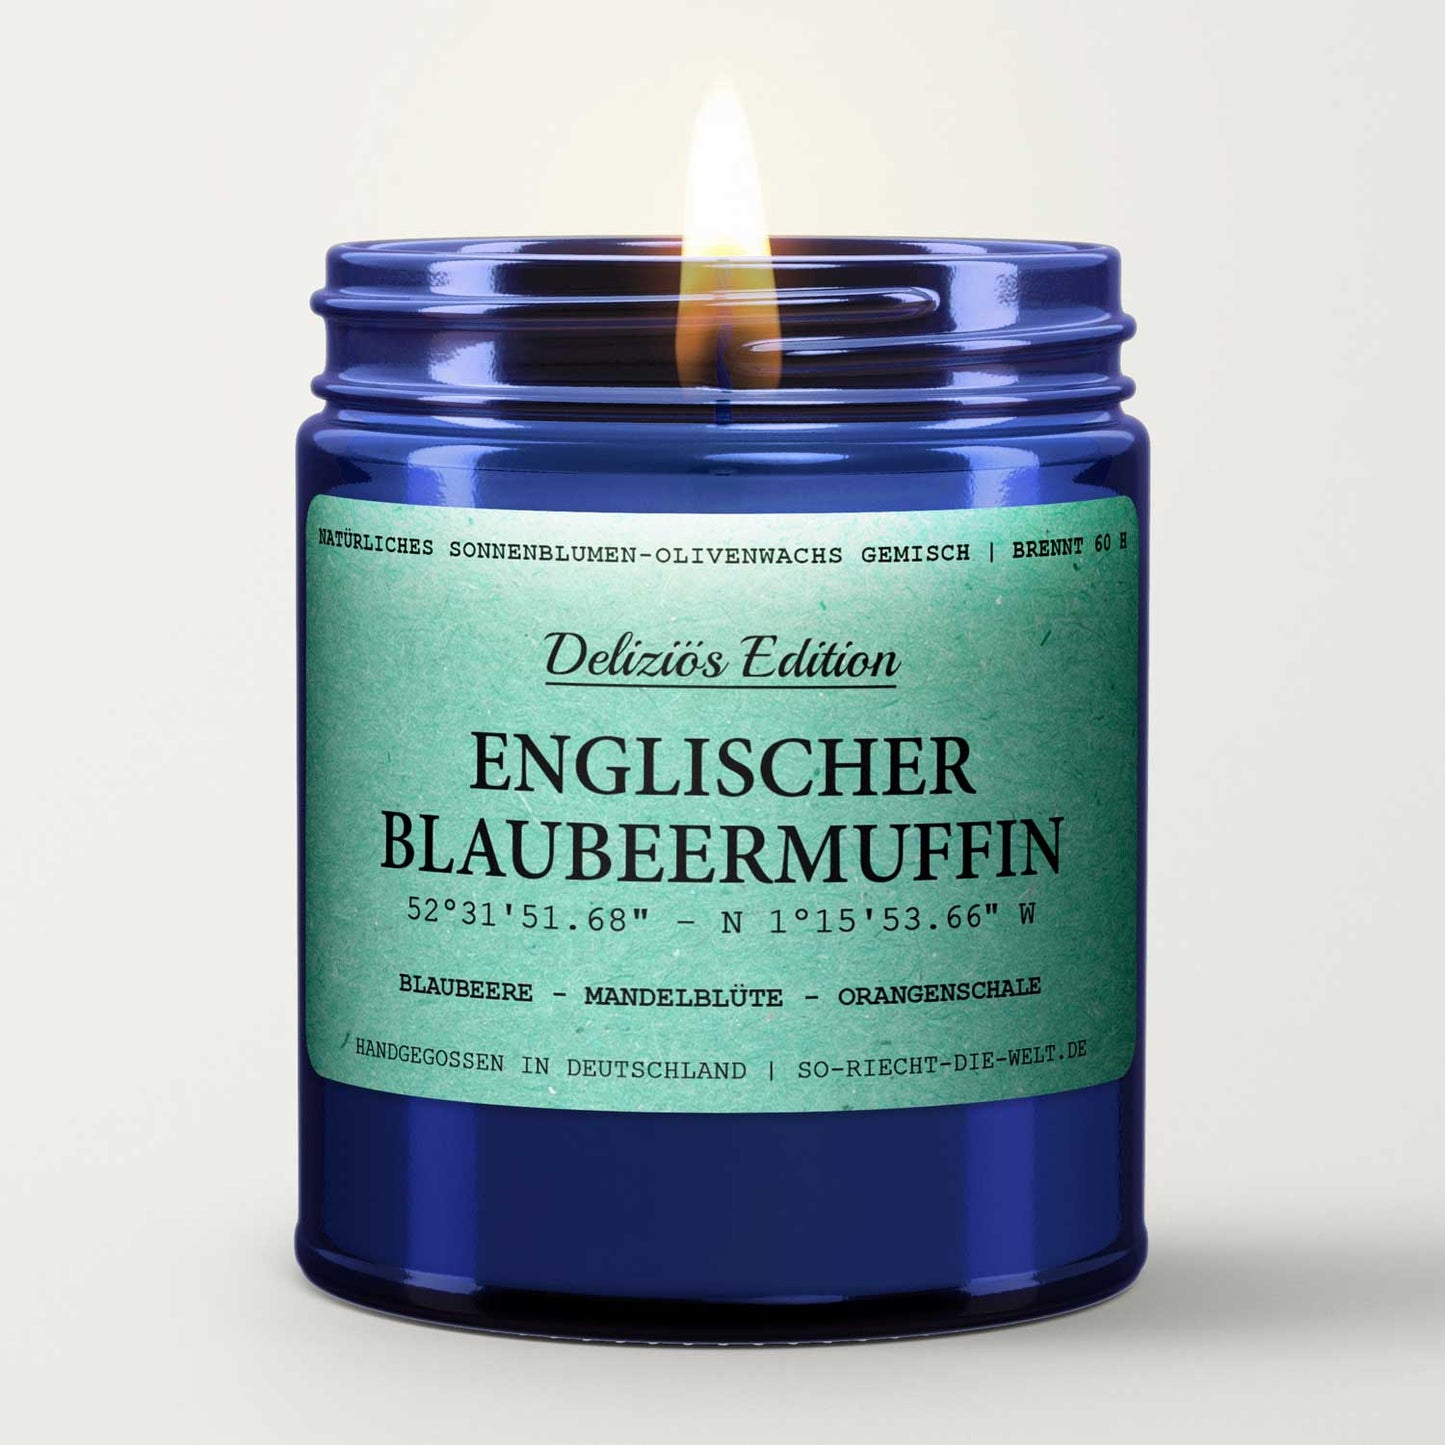 Englischer Blaubeermuffin Duftkerze - Deliziös Edition - Blaubeere | Mandelblüte | Orangenschale